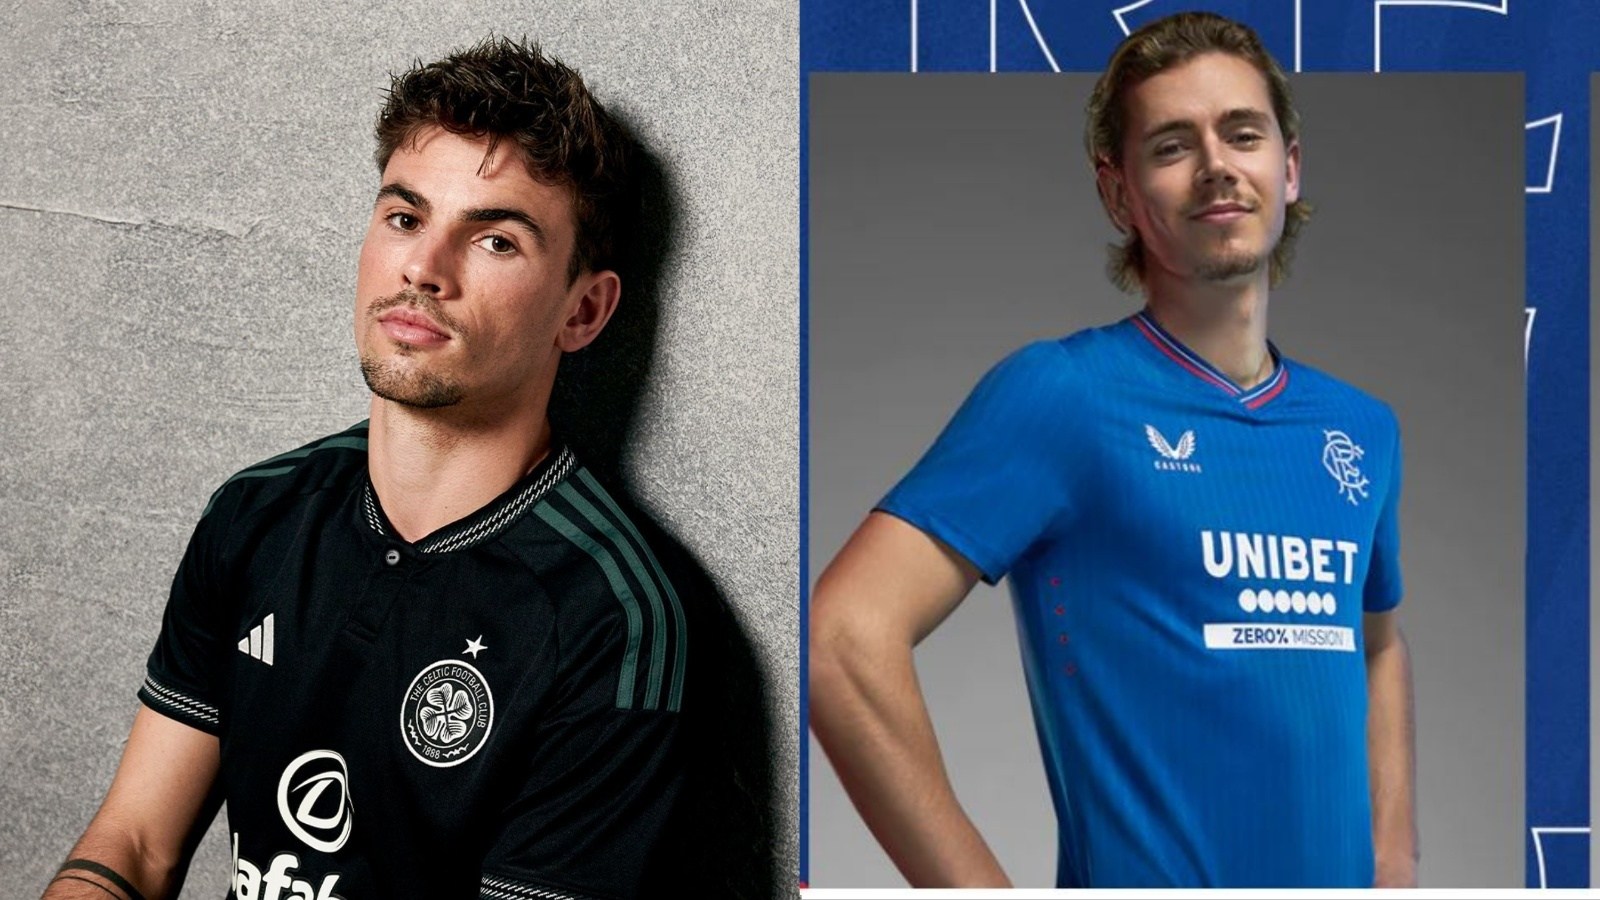 Adidas Celtic Mens 2022/23 Third Shirt with No Sponsor